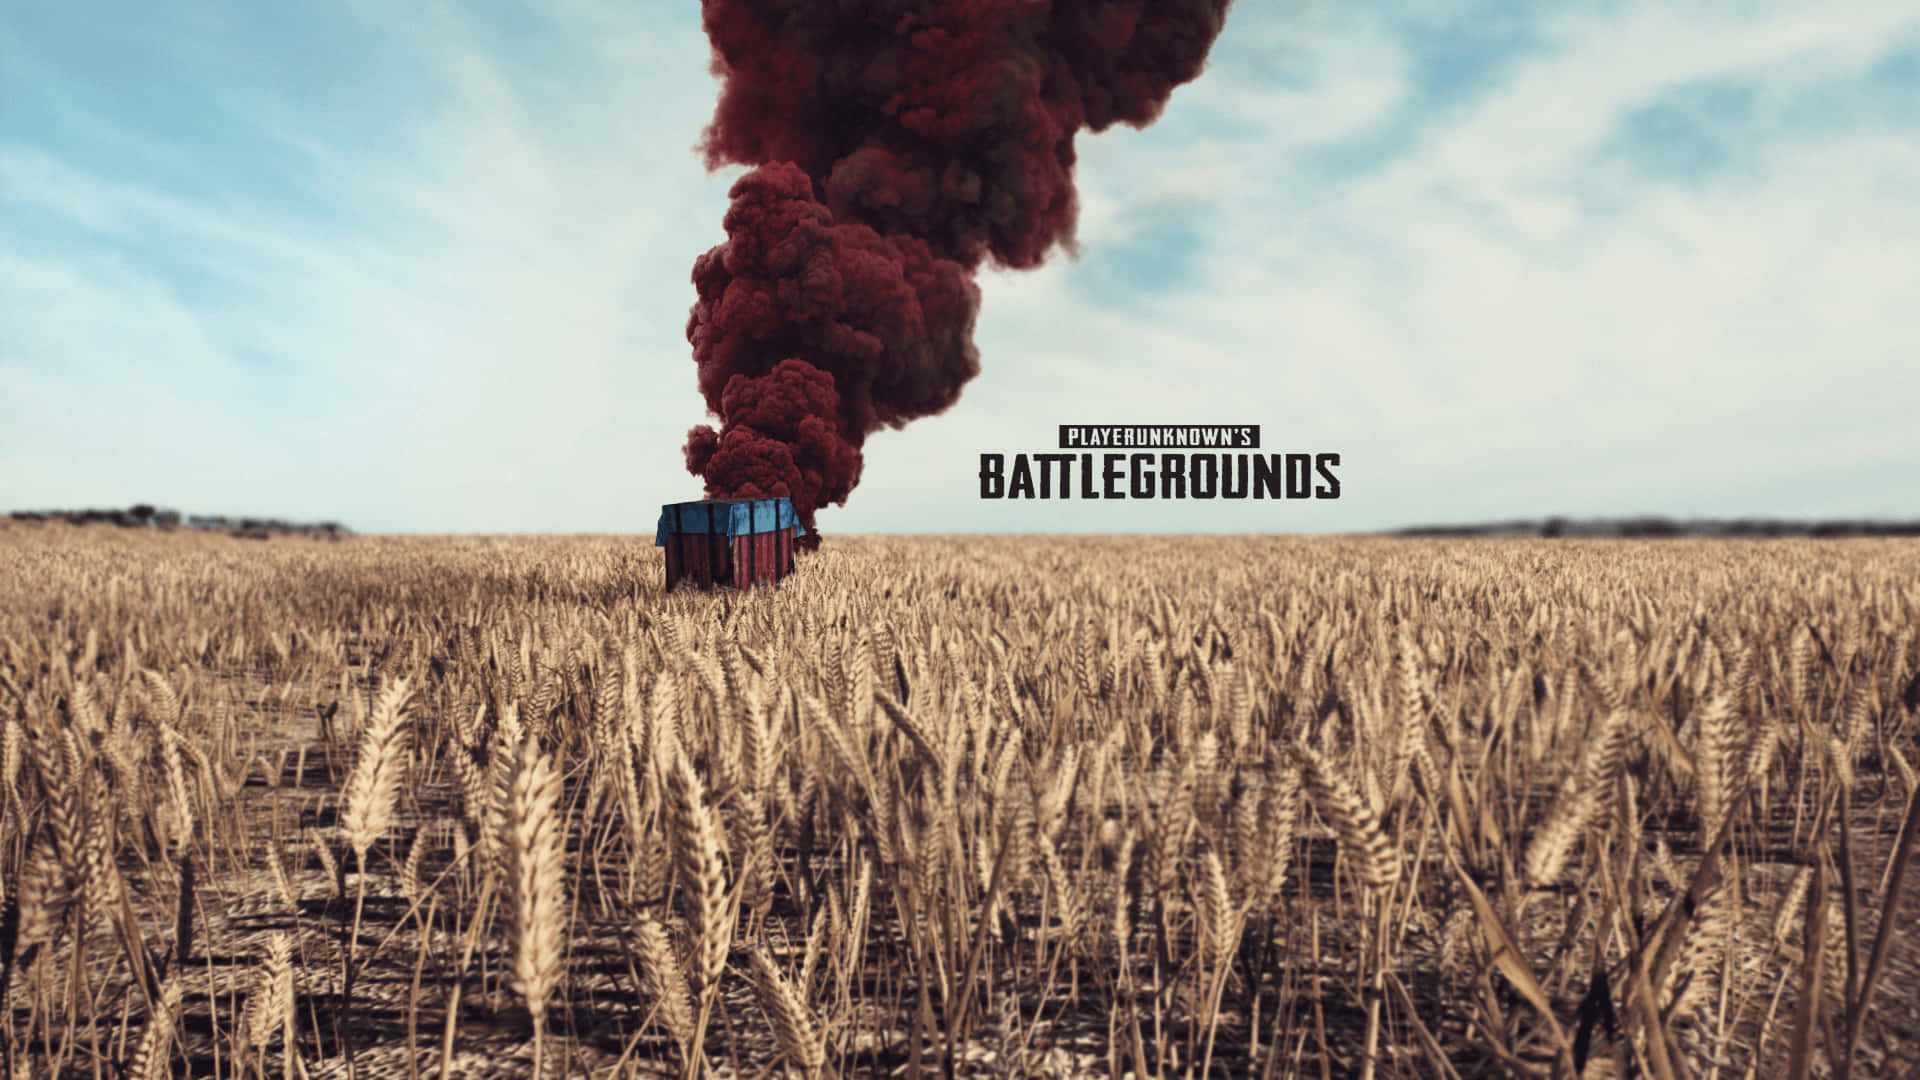 Nyd spændingen ved Player Unknown Battlegrounds i denne eksplosive overlevelses-skydespil. Wallpaper